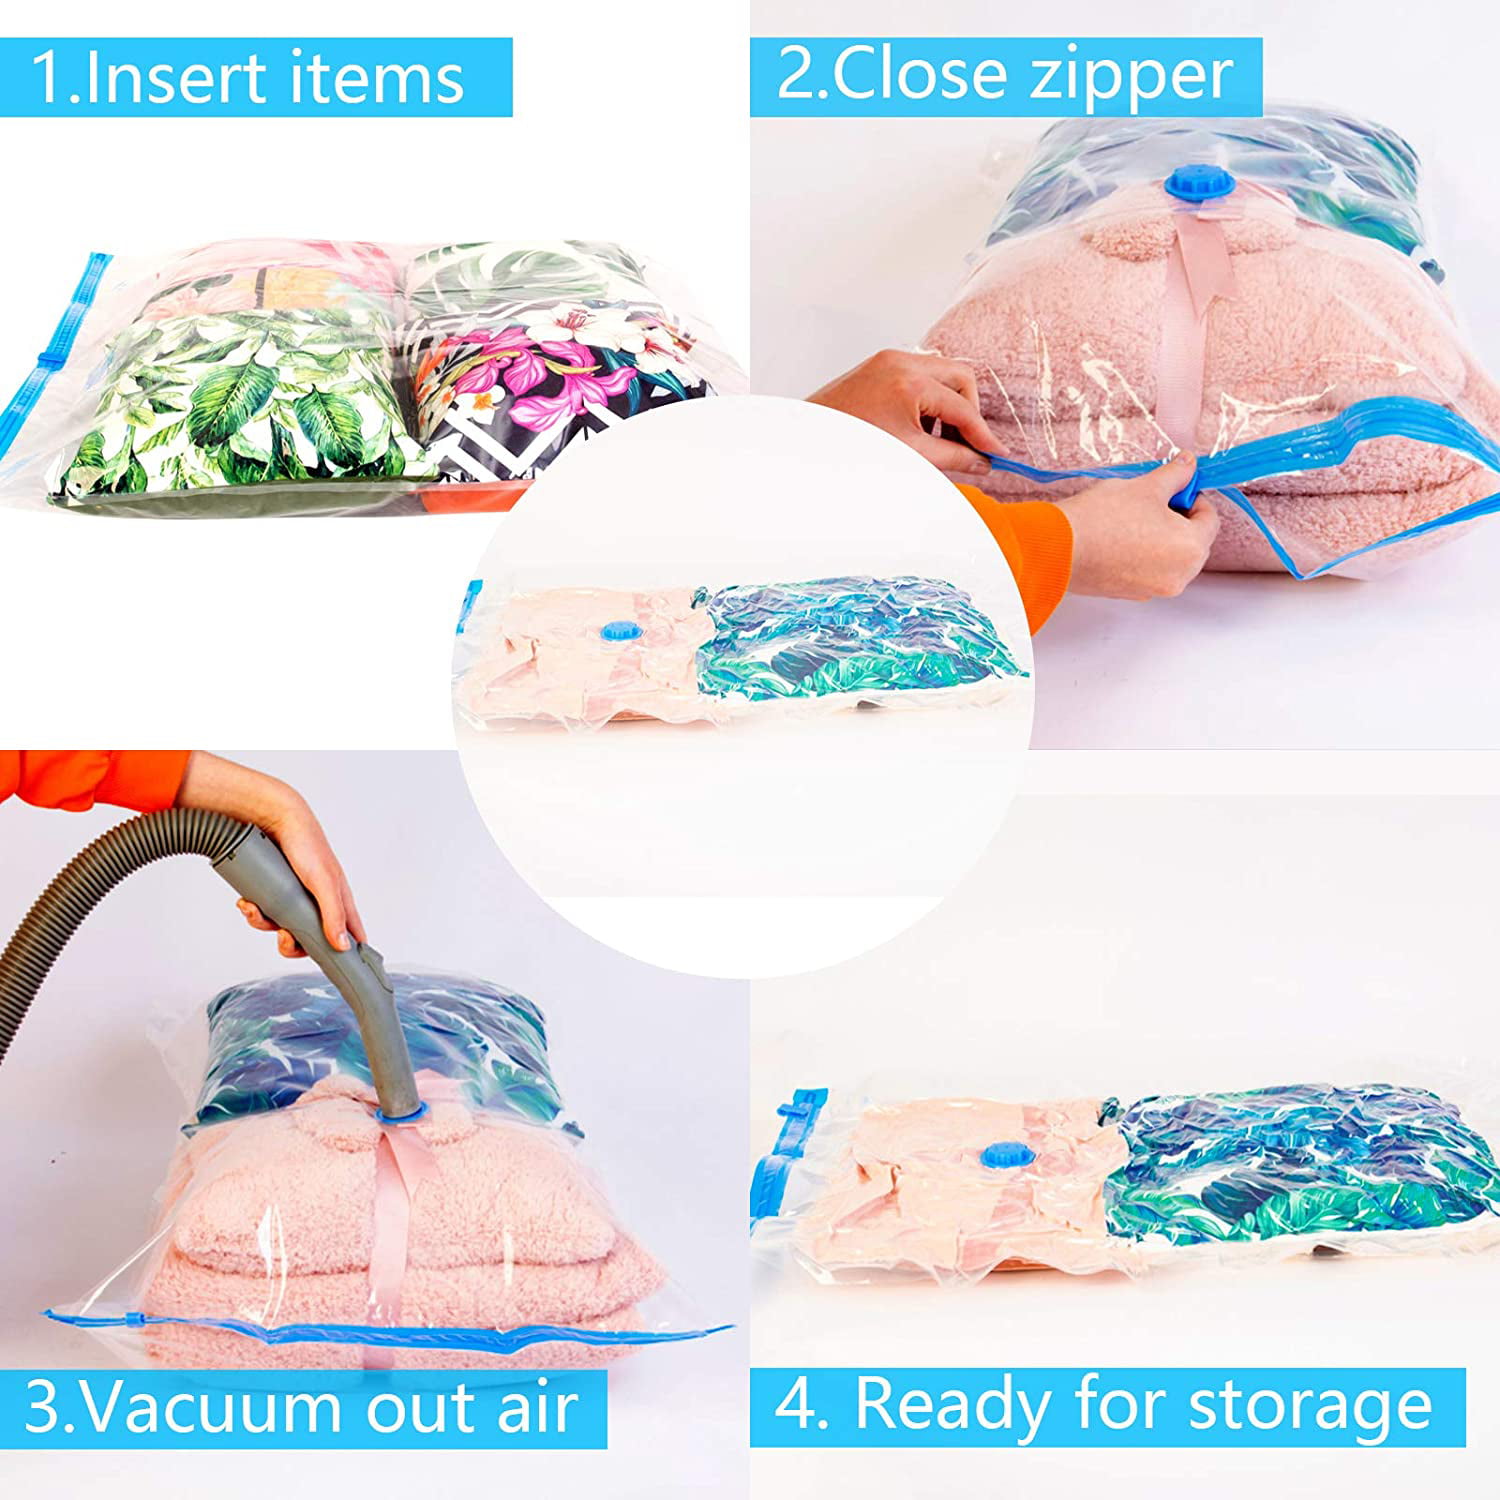 Click-it Vacuum storage bags